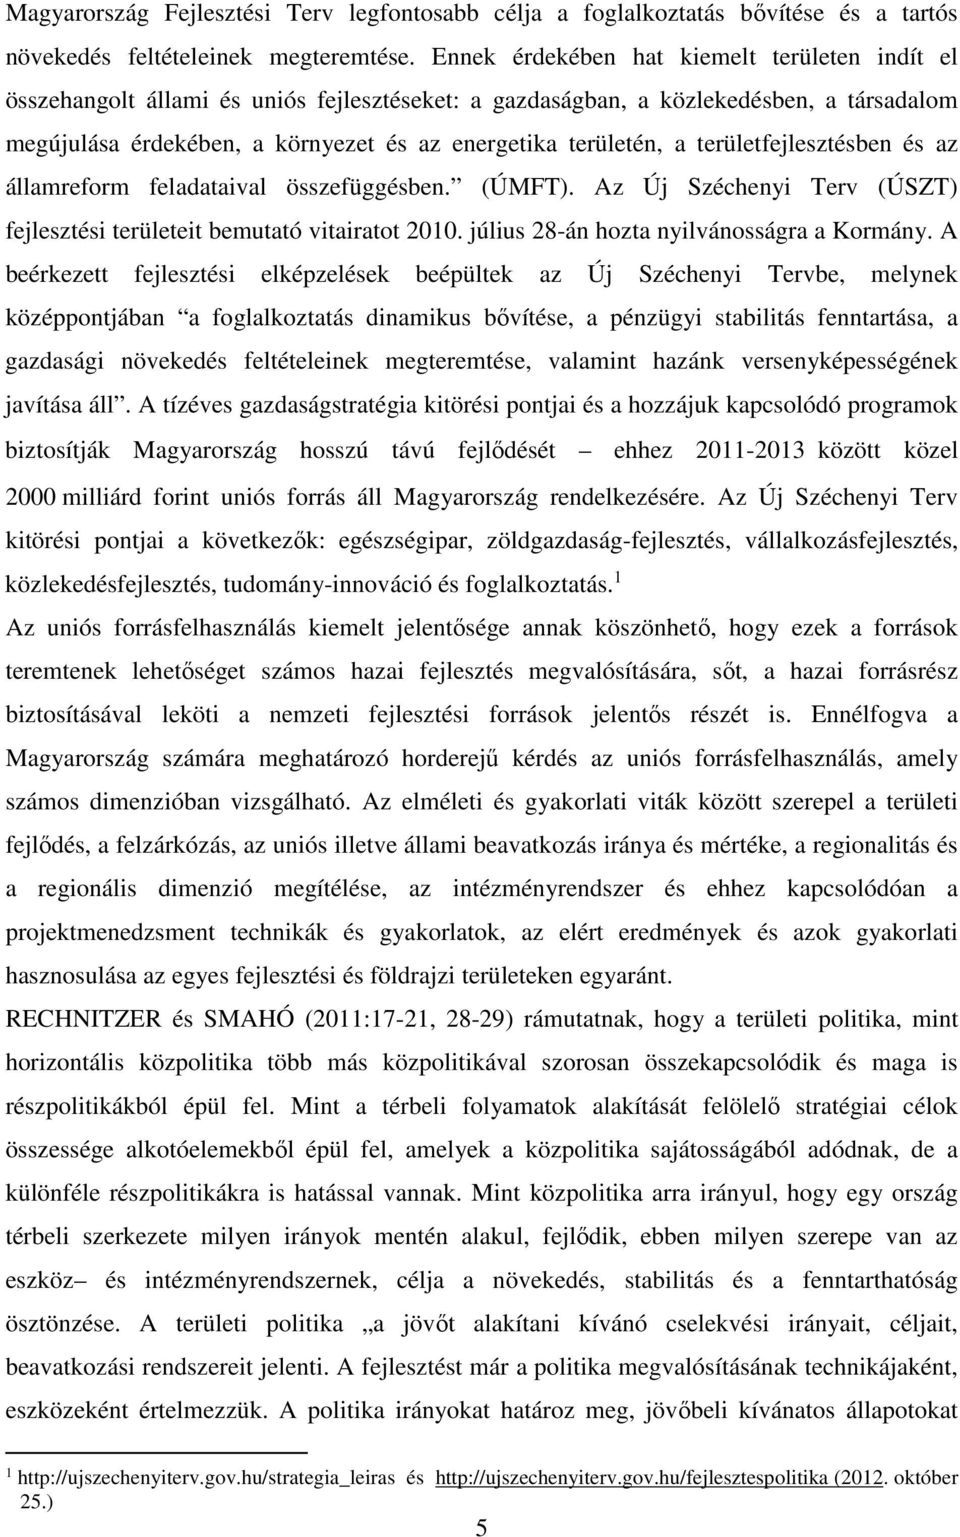 a területfejlesztésben és az államreform feladataival összefüggésben. (ÚMFT). Az Új Széchenyi Terv (ÚSZT) fejlesztési területeit bemutató vitairatot 2010. július 28-án hozta nyilvánosságra a Kormány.